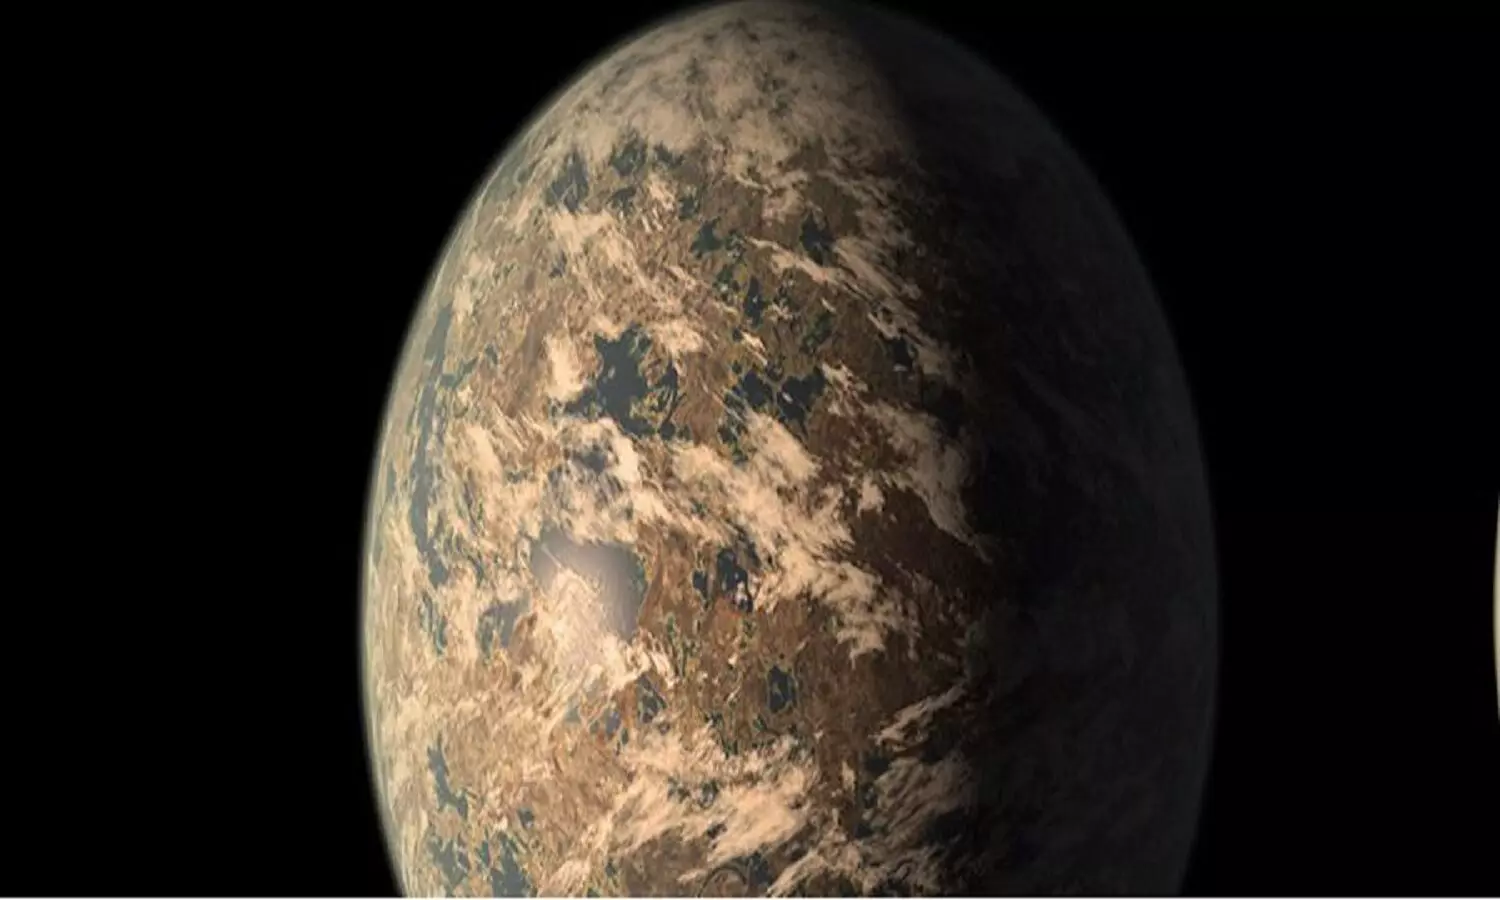 James Webb Found Earth Like Planet: NASA के जेम्स वेब स्पेस टेलिस्कोप को पृथ्वी जैसा गृह मिल गया